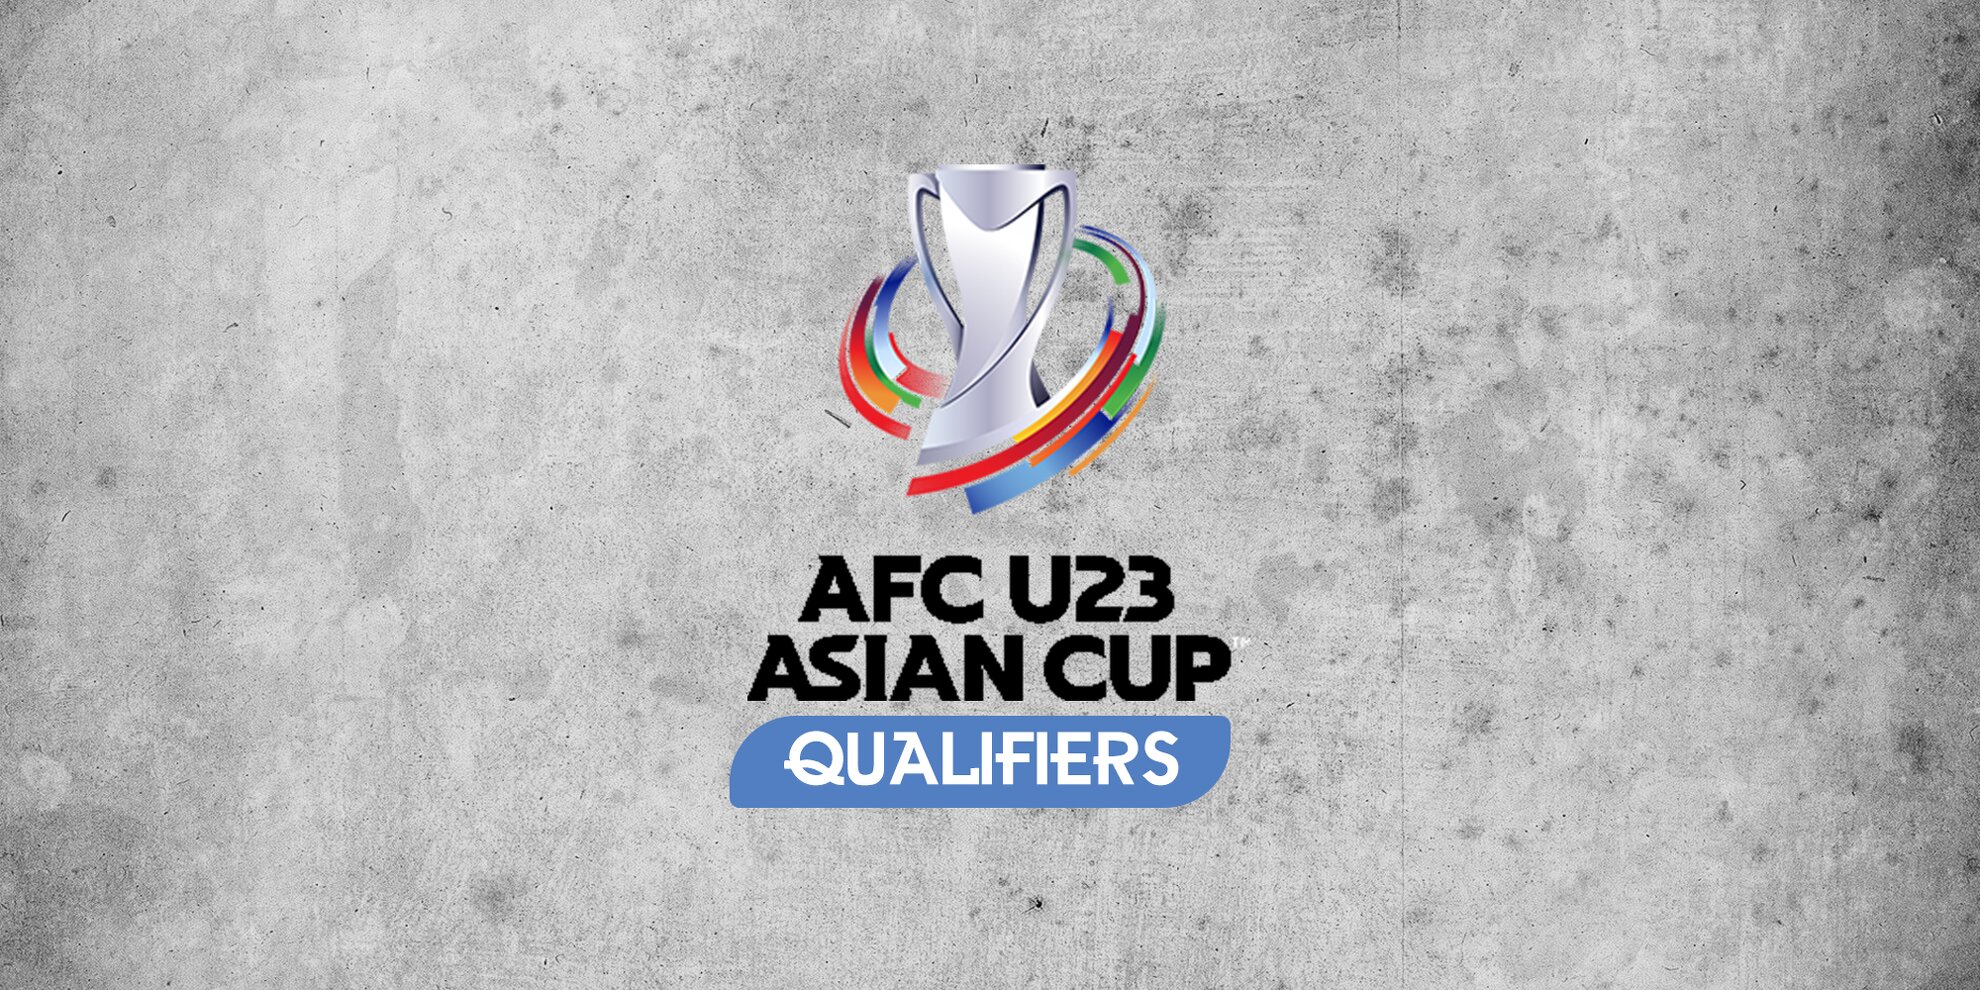 Afc u23 qualifiers 2021